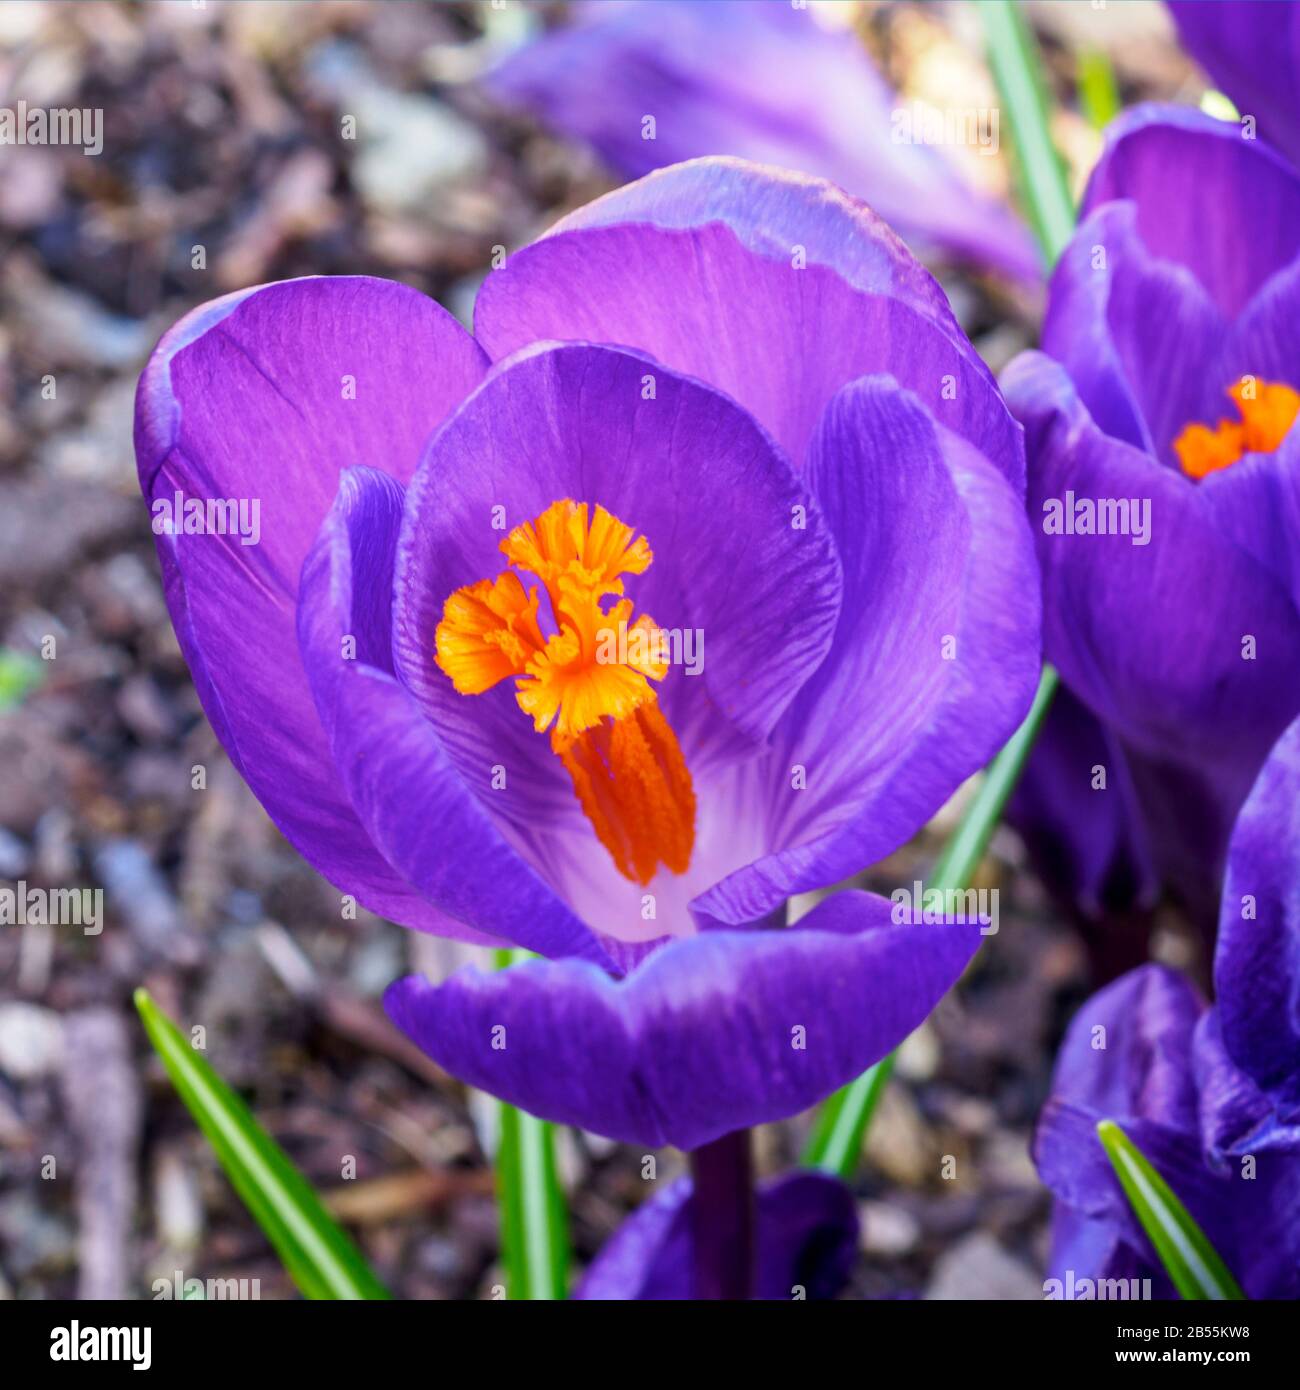 Nahaufnahme einer violetten Krokusblüte mit leuchtend gelben Staubblättern und Antheren Stockfoto